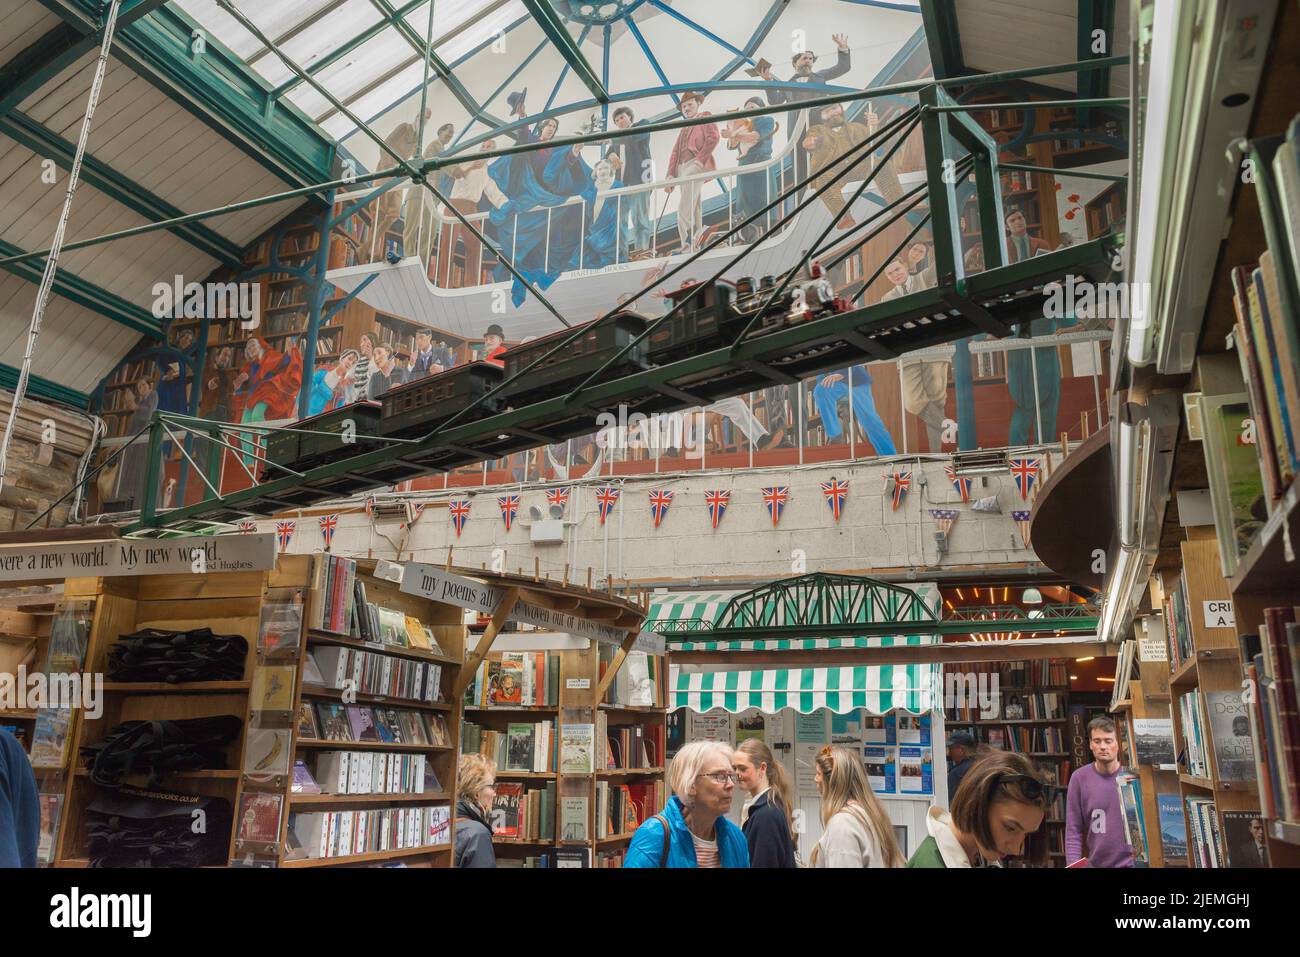 Libreria del Regno Unito, visita il famoso negozio di libri Barter Books di Alnwick con la sua ferrovia a cielo aperto funzionante, Northumberland, Inghilterra, Regno Unito Foto Stock